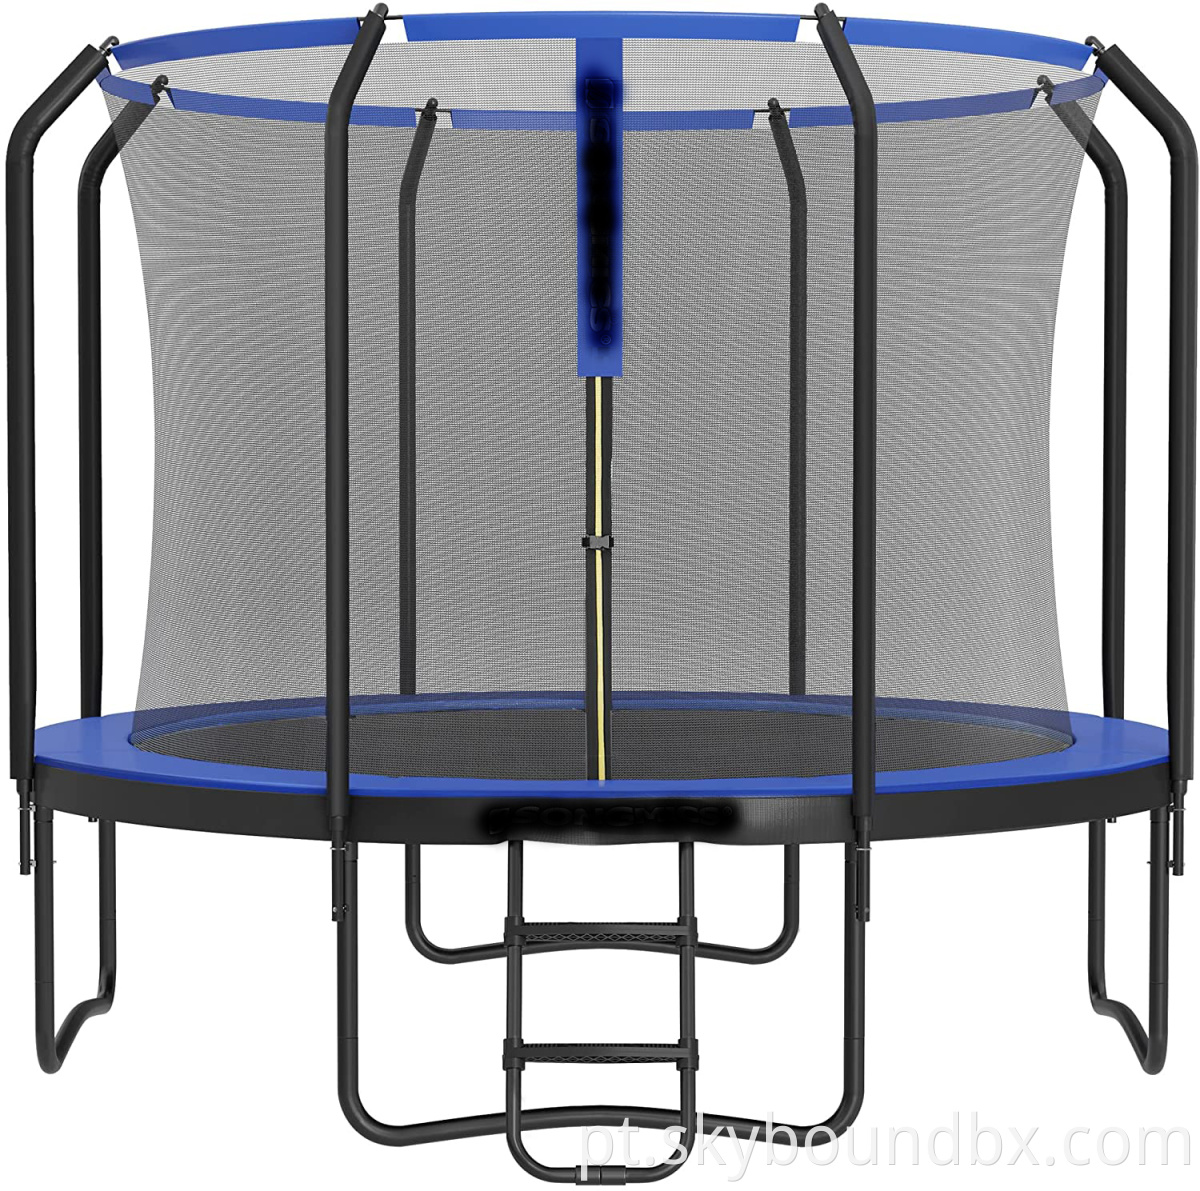 Trampolim, trampolim de 366 cm de diâmetro com 8 postes, trampolim ao ar livre para fitness e o jardim com rede de segurança versátil